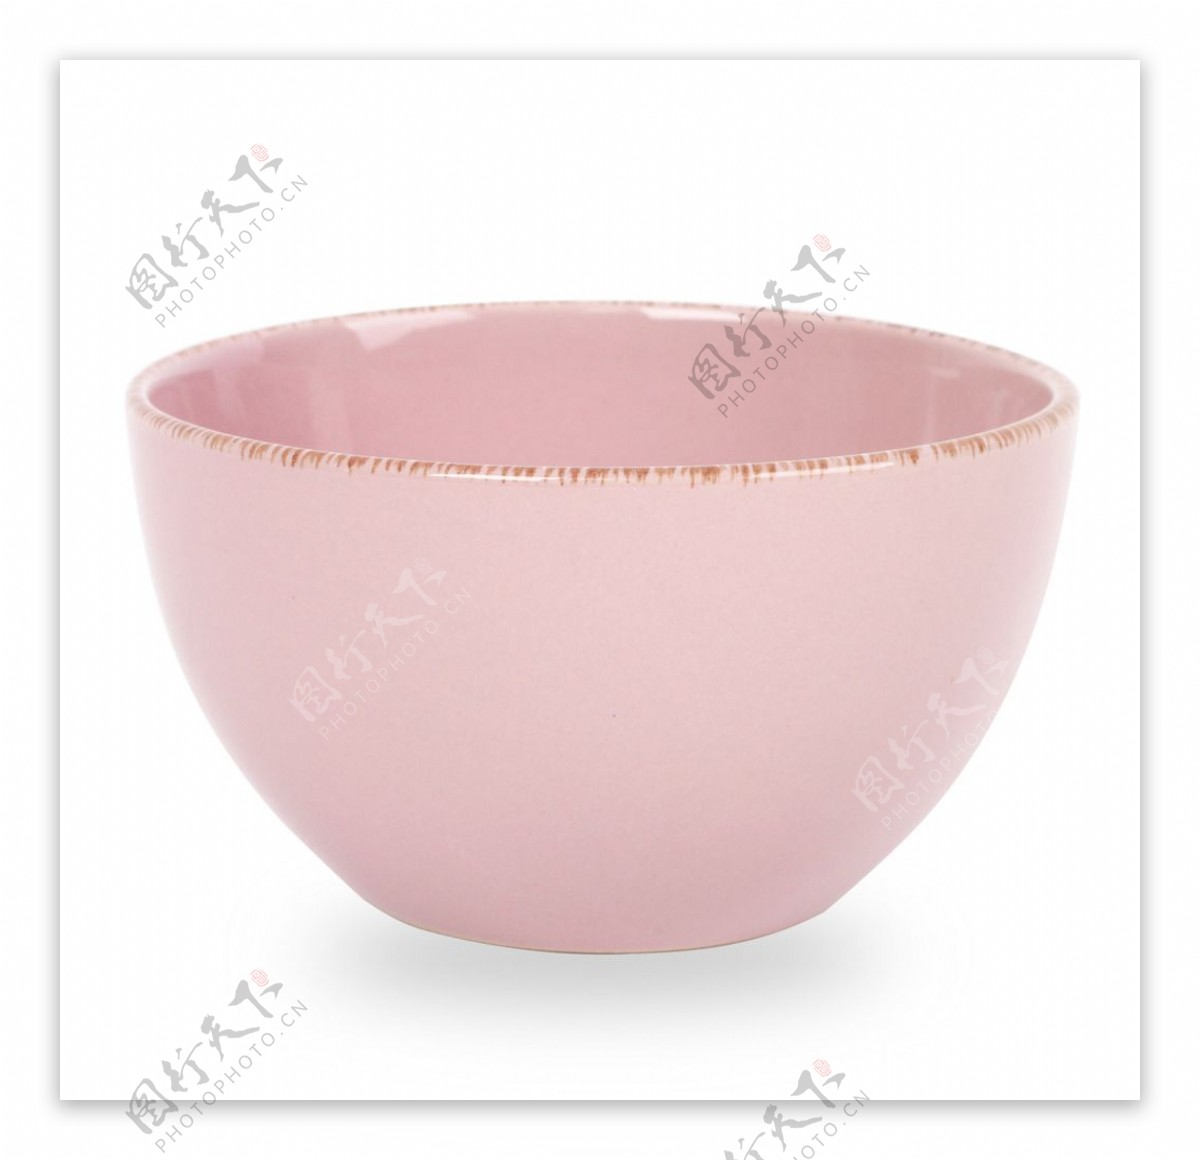 粉色陶瓷碗分层图片